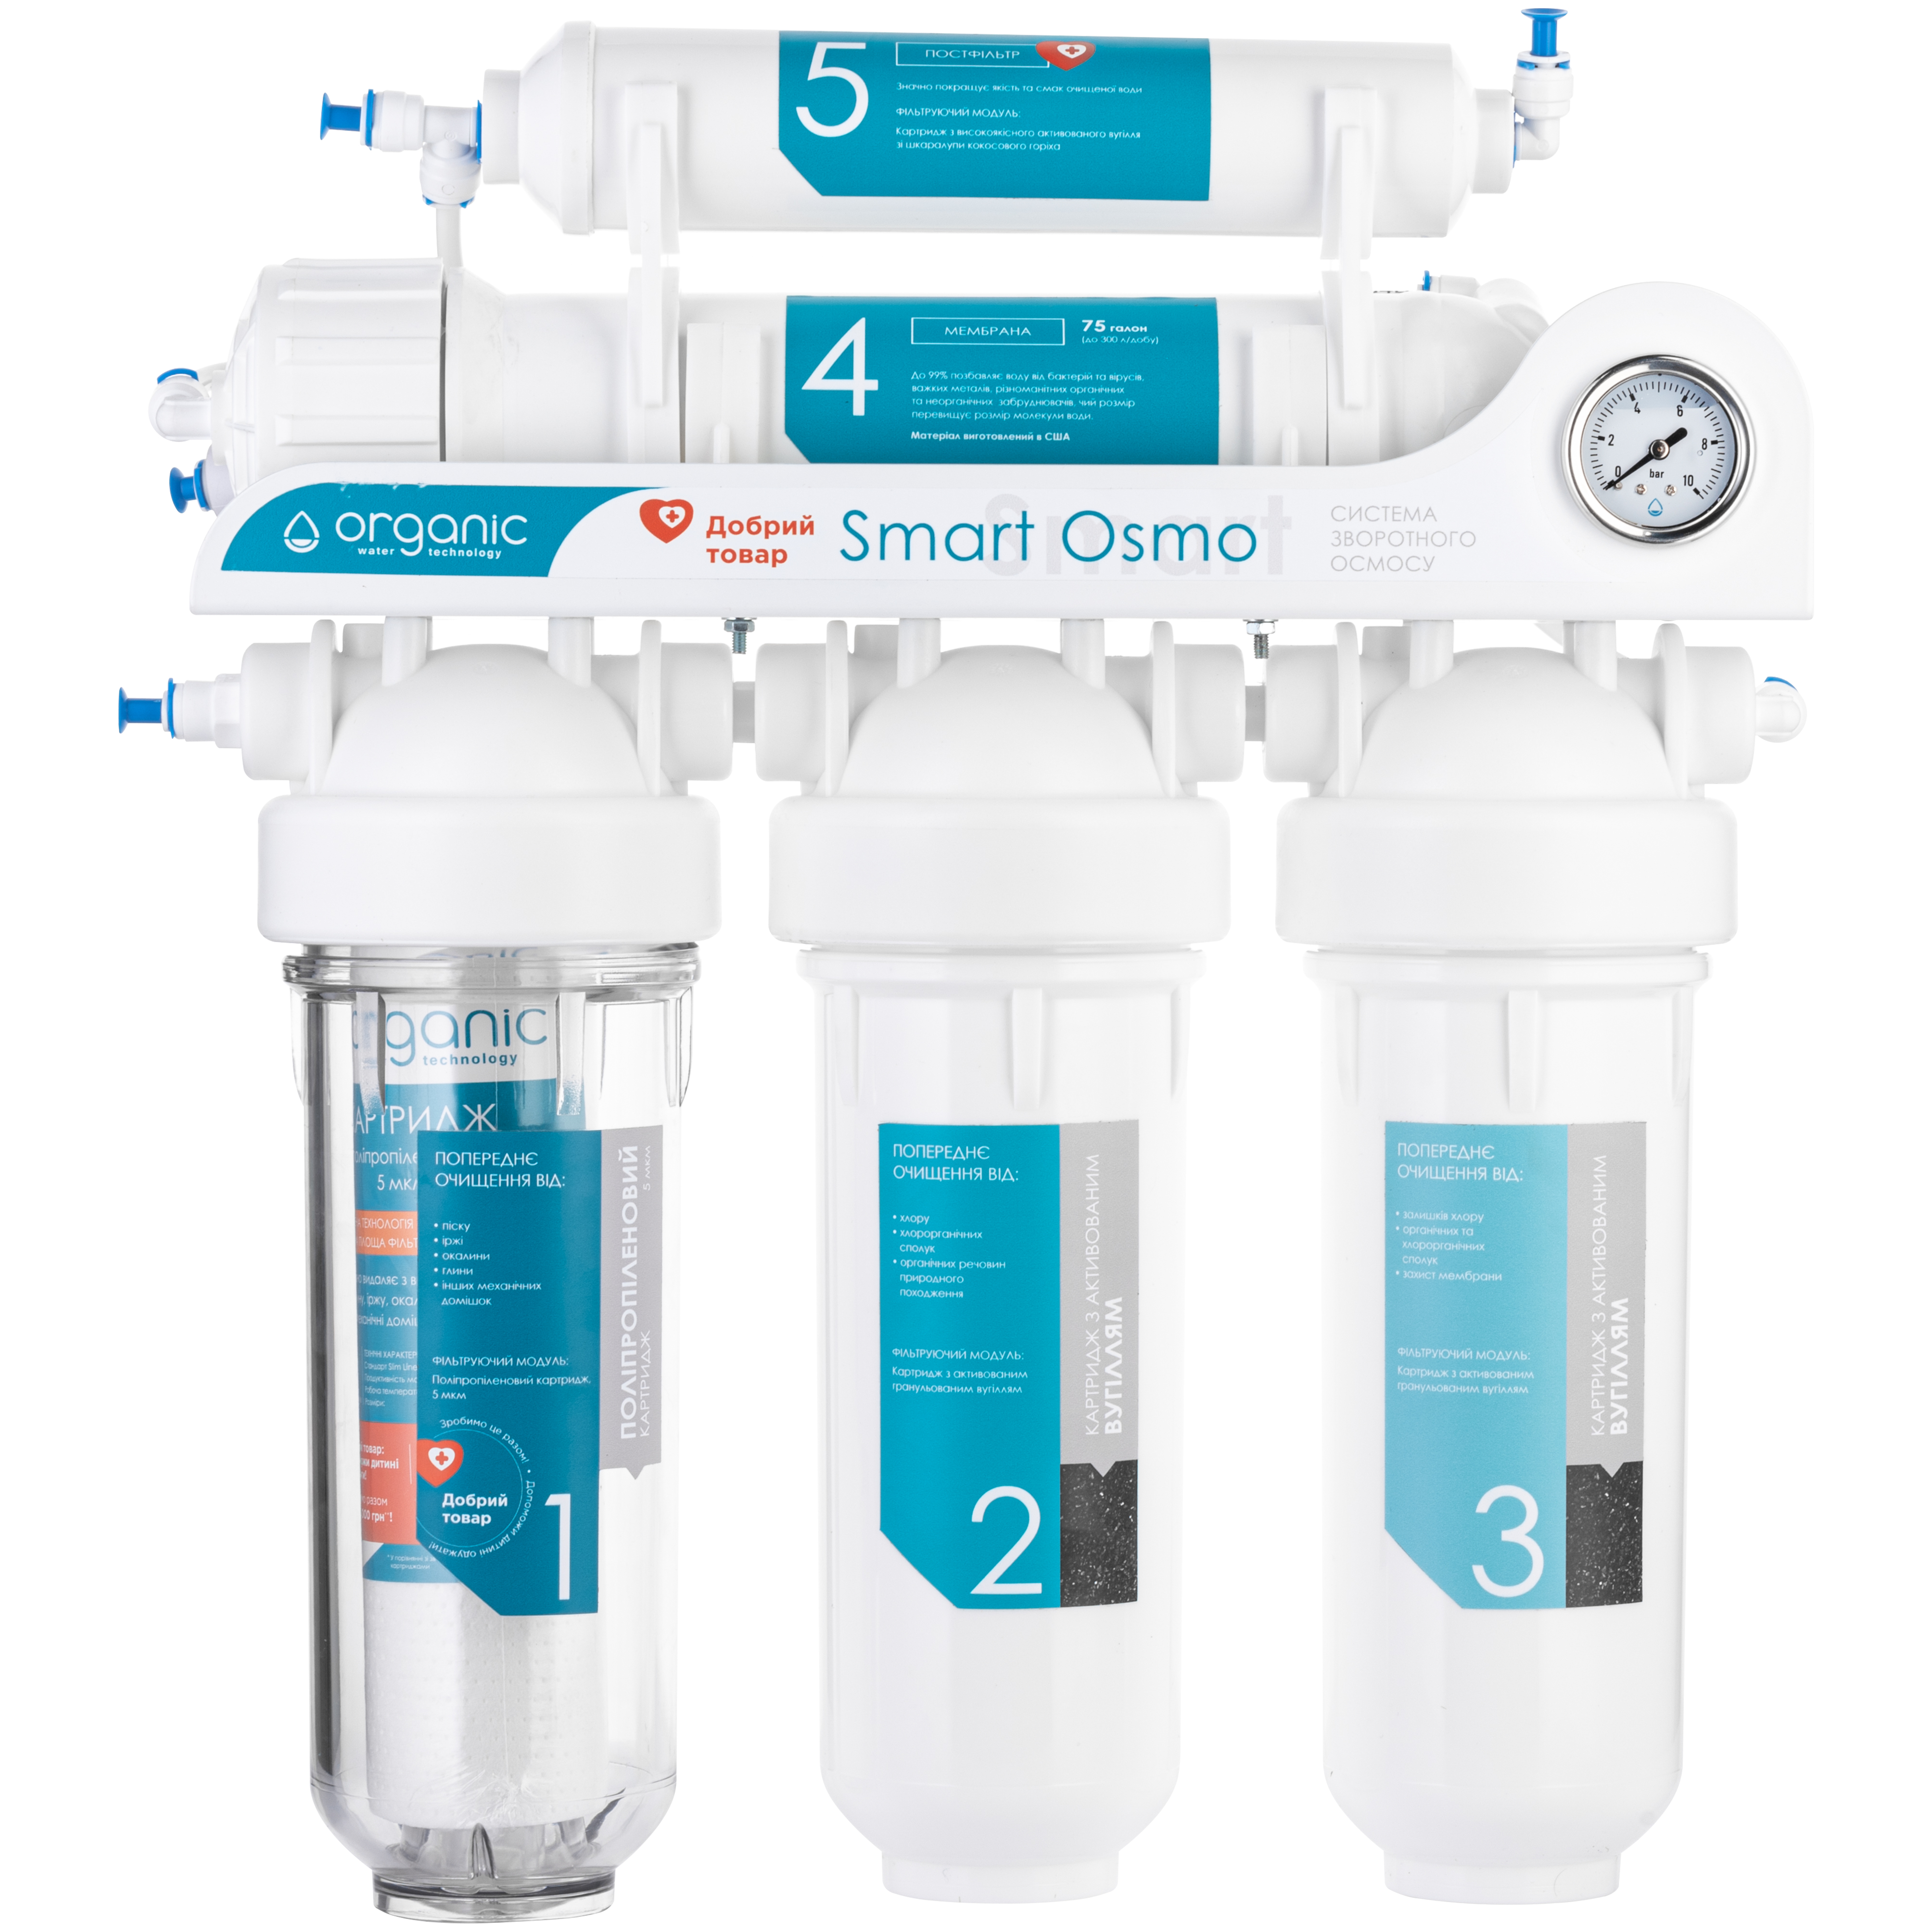 Фильтр для очистки воды в аквариуме Organic Smart Osmo 5